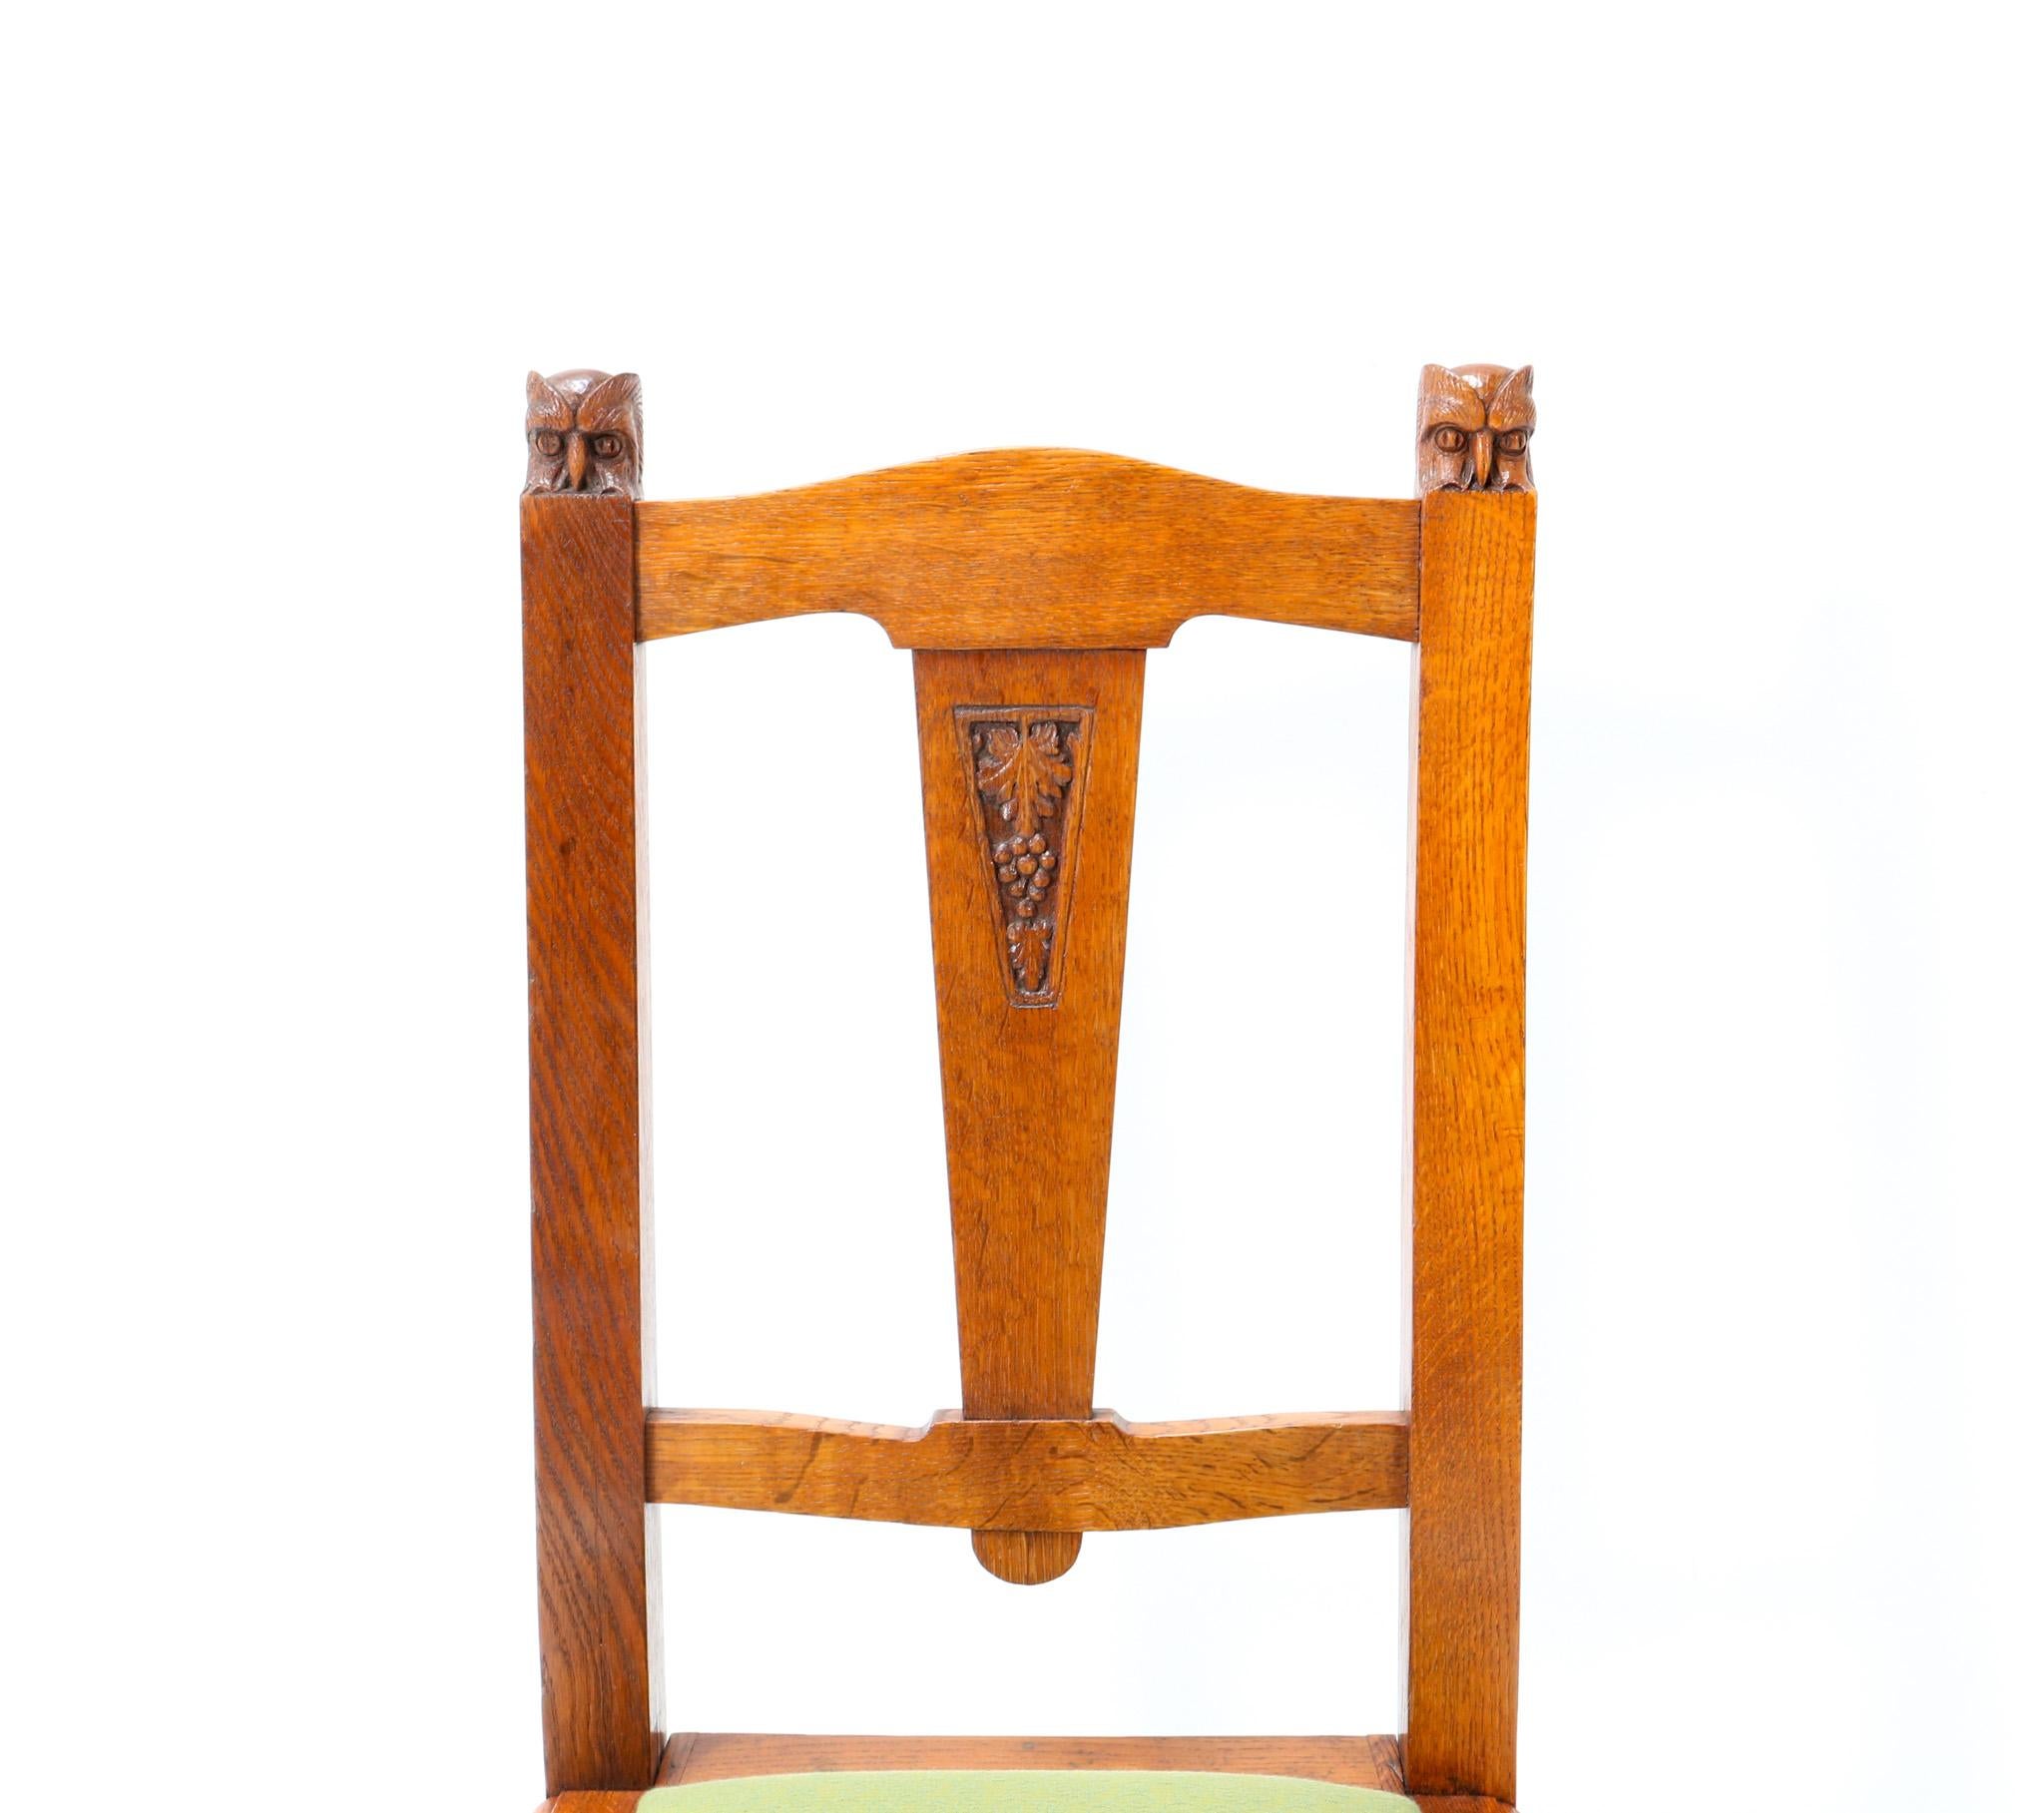 Oak Arts & Crafts Art Nouveau Side Chair by Kobus de Graaff, 1900s For Sale 4